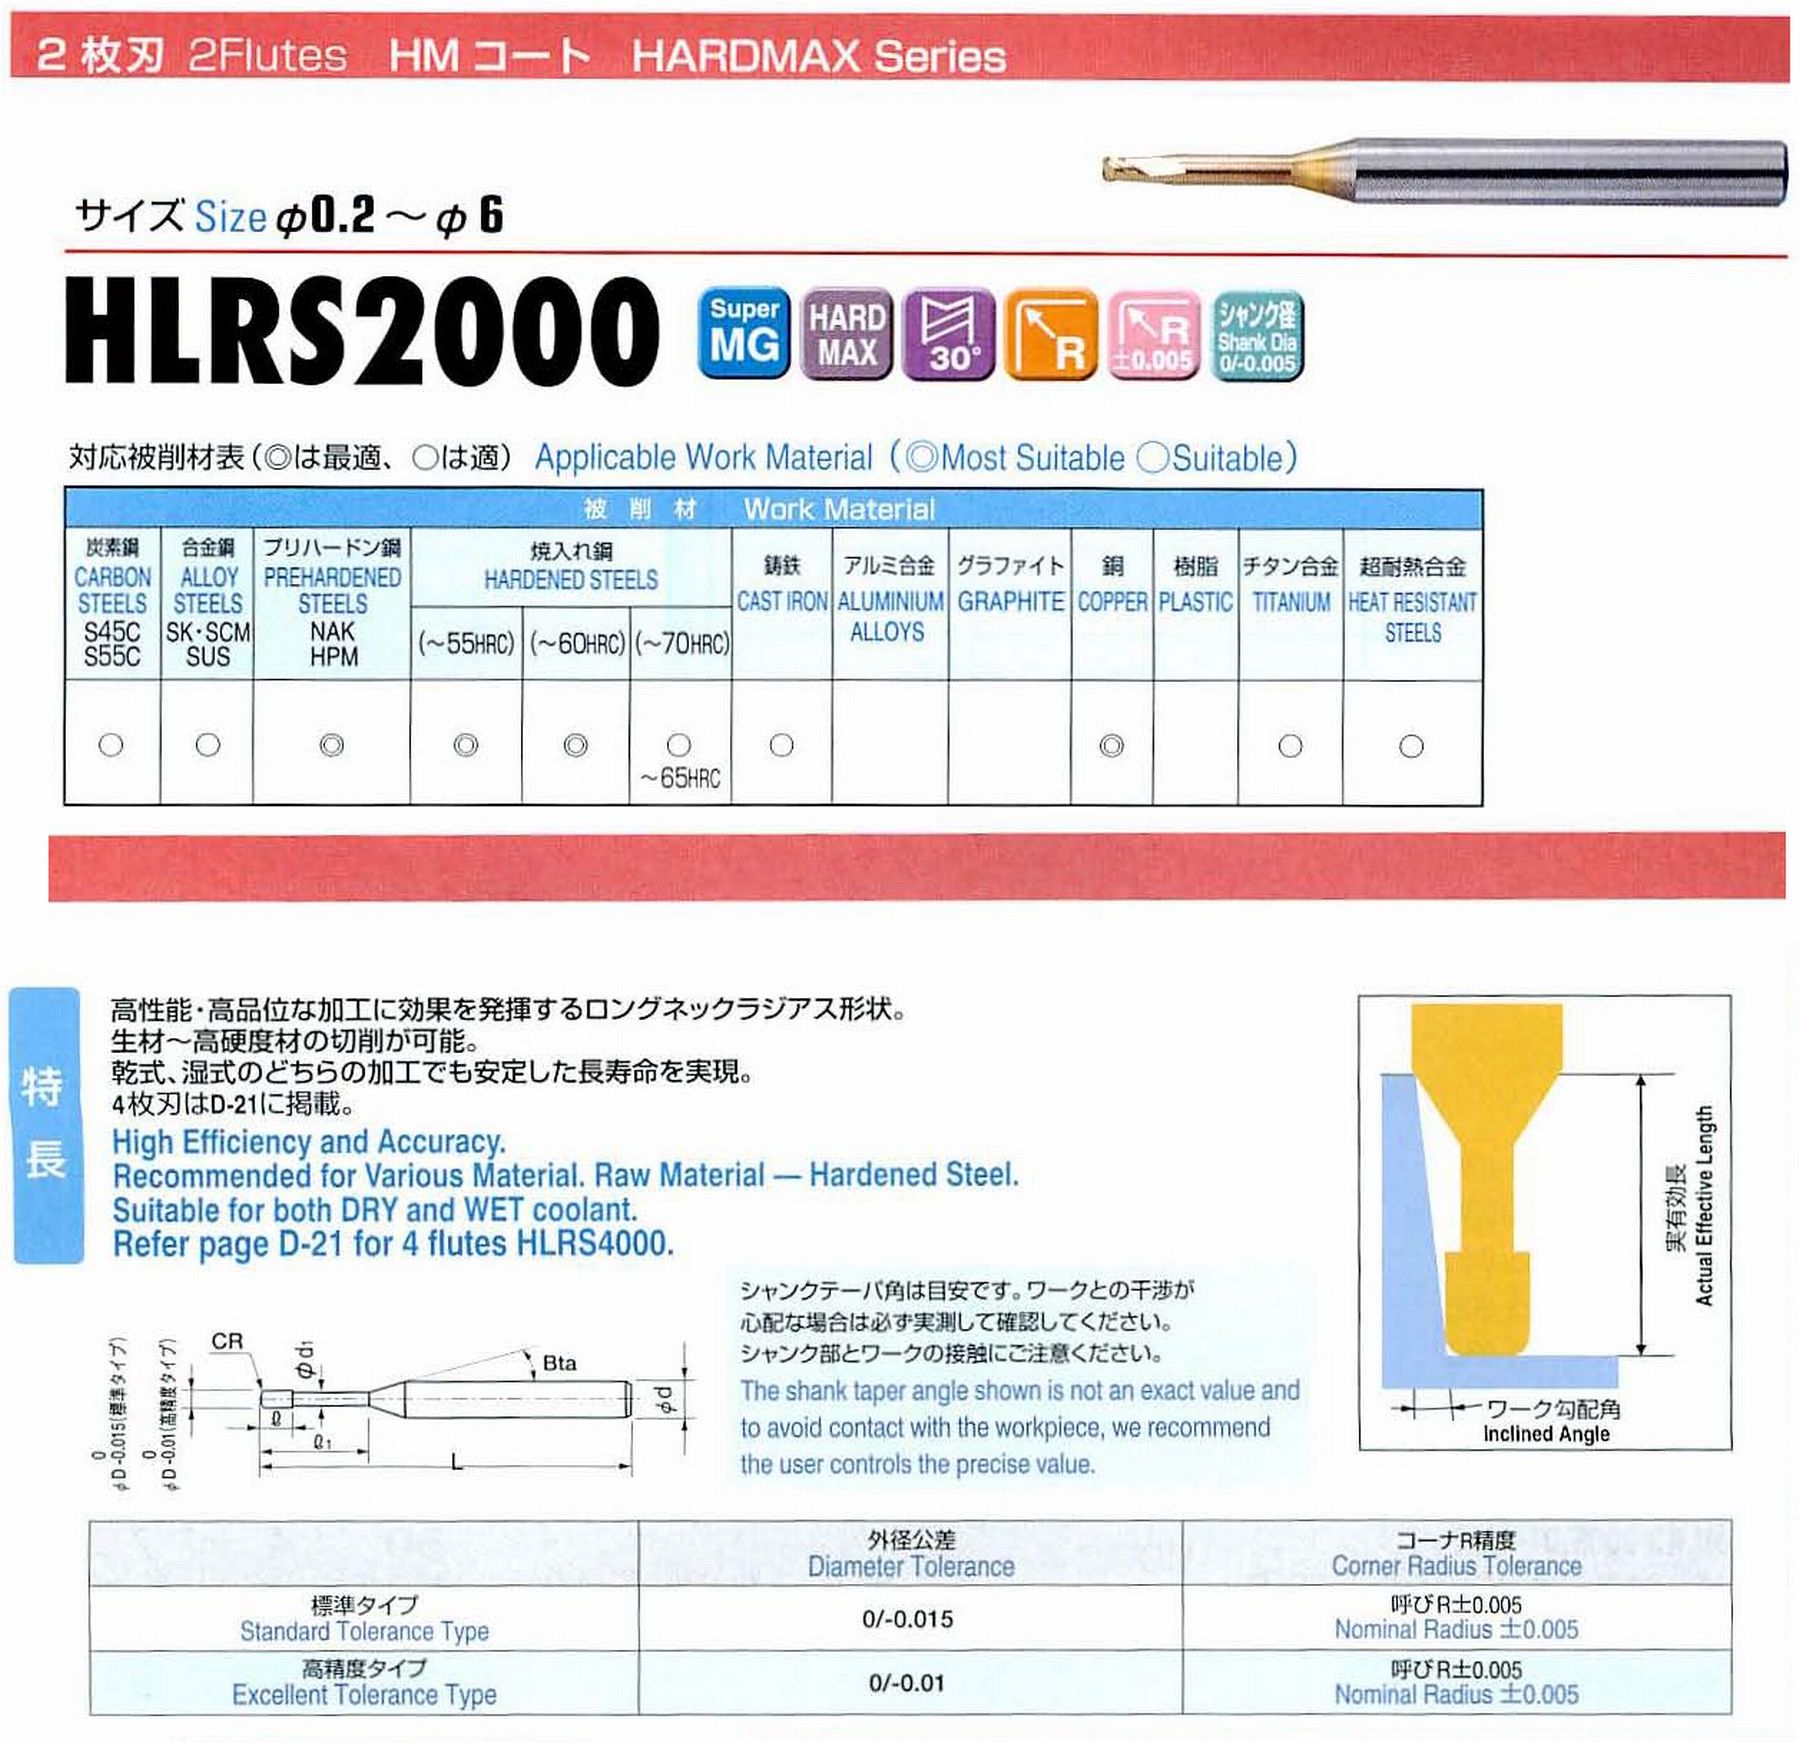 ユニオンツール 2枚刃 HLRS2015-03-080 外径1.5 コーナ半径R0.3 有効長8 刃長1.5 首径1.45 シャンクテーパ角16° 全長50 シャンク径4